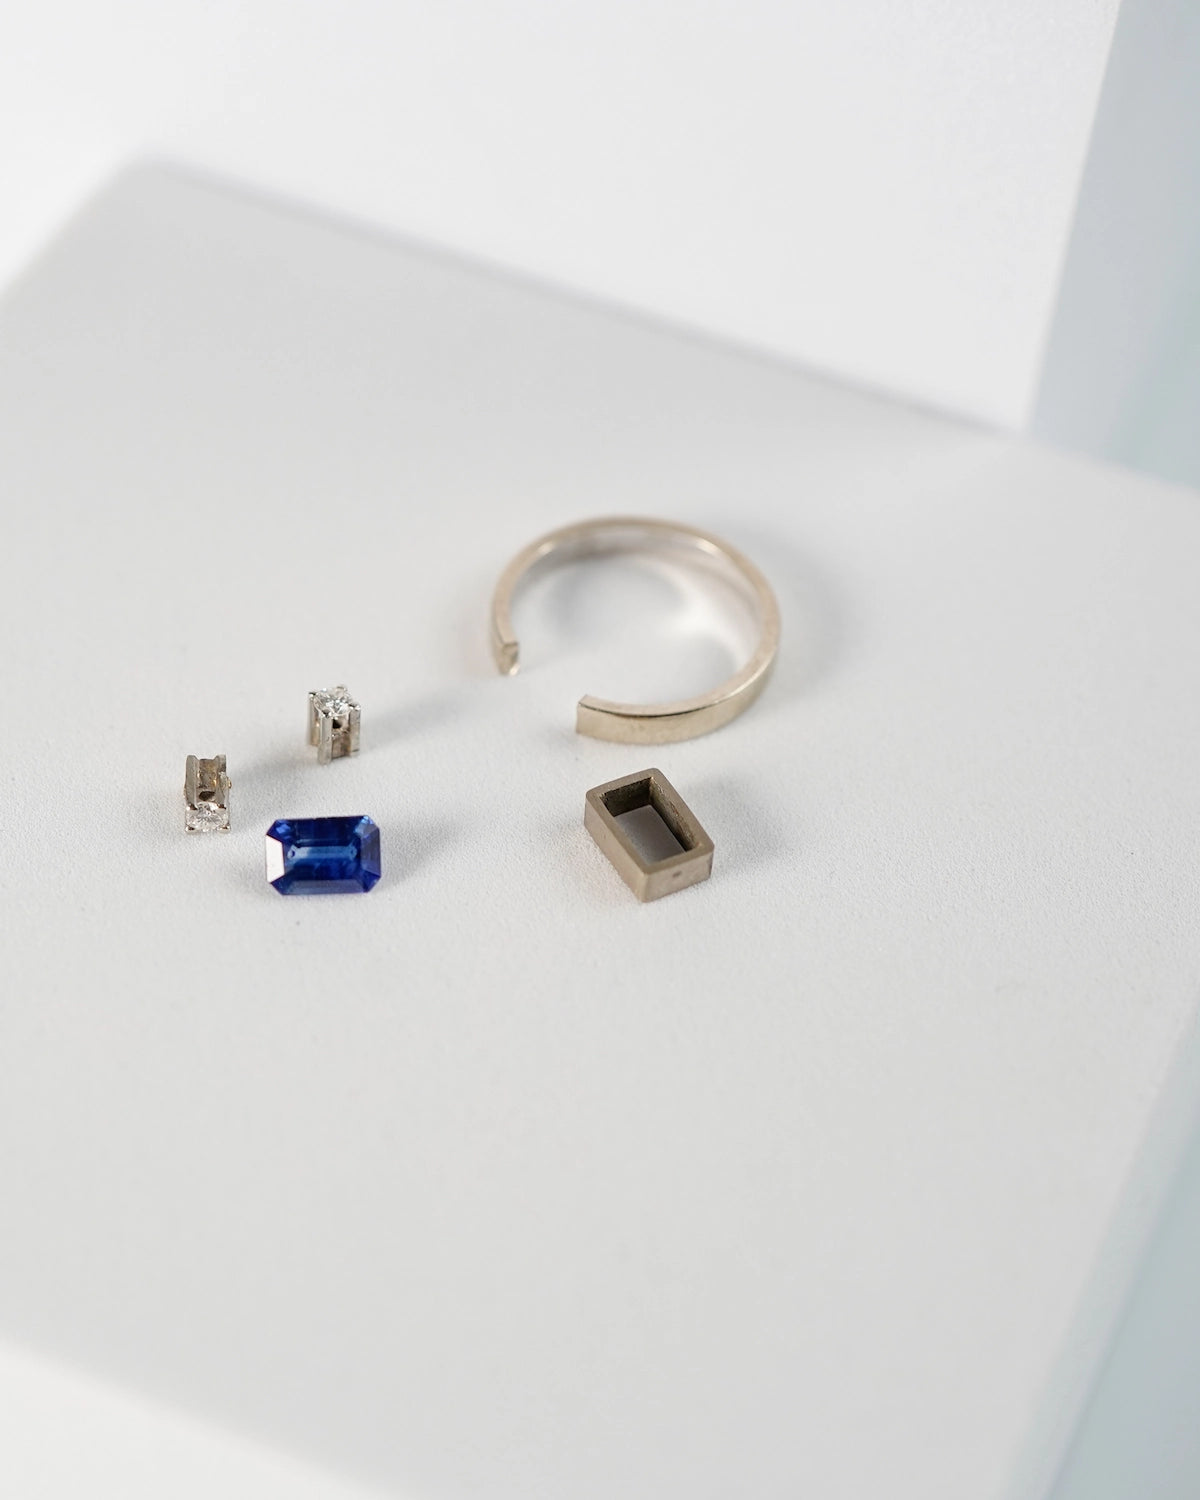 Einzelteile für einen Weißgold-Brillant-Ring, betsehend aus zwei Brillanten, einem Saphir, einer Ringeschiene und der Fassung